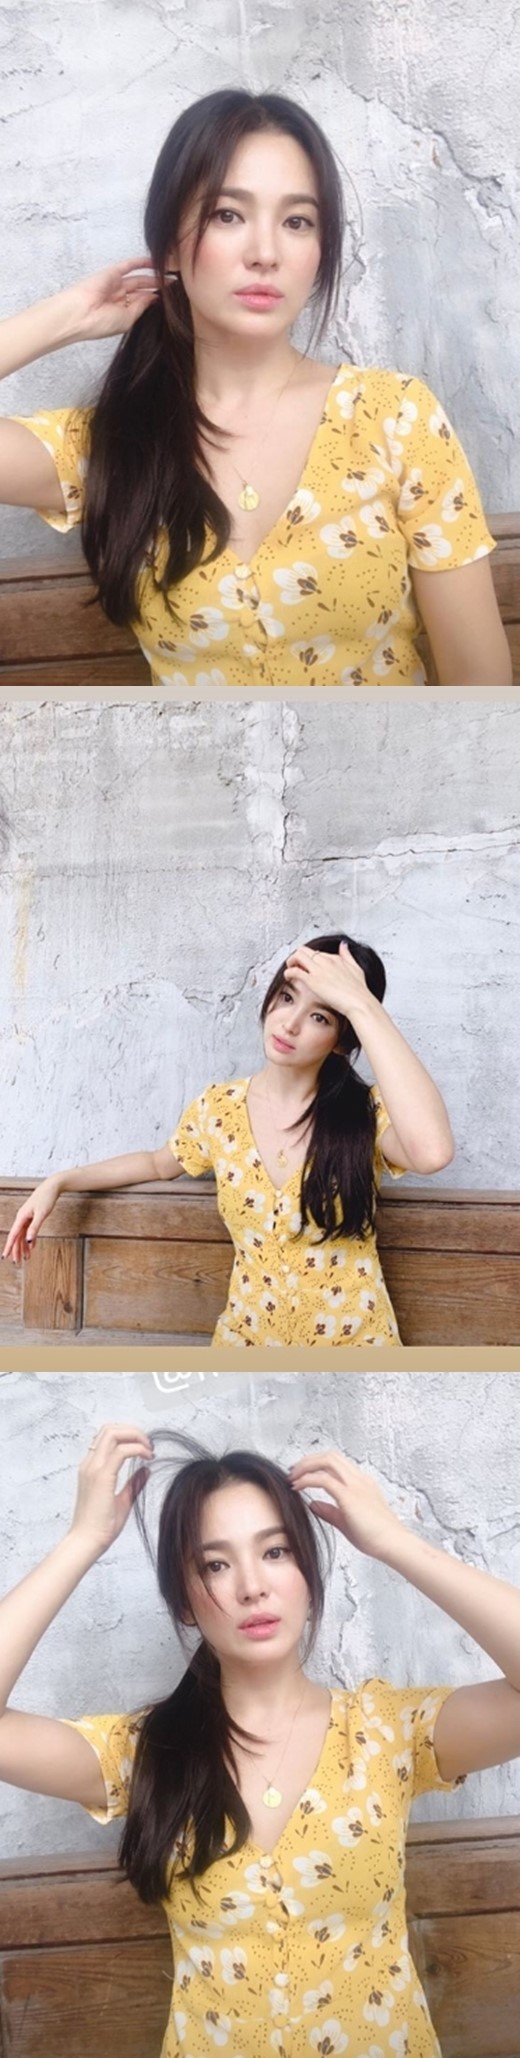 韩国女艺人宋慧乔申请离婚前一天SNS发近照